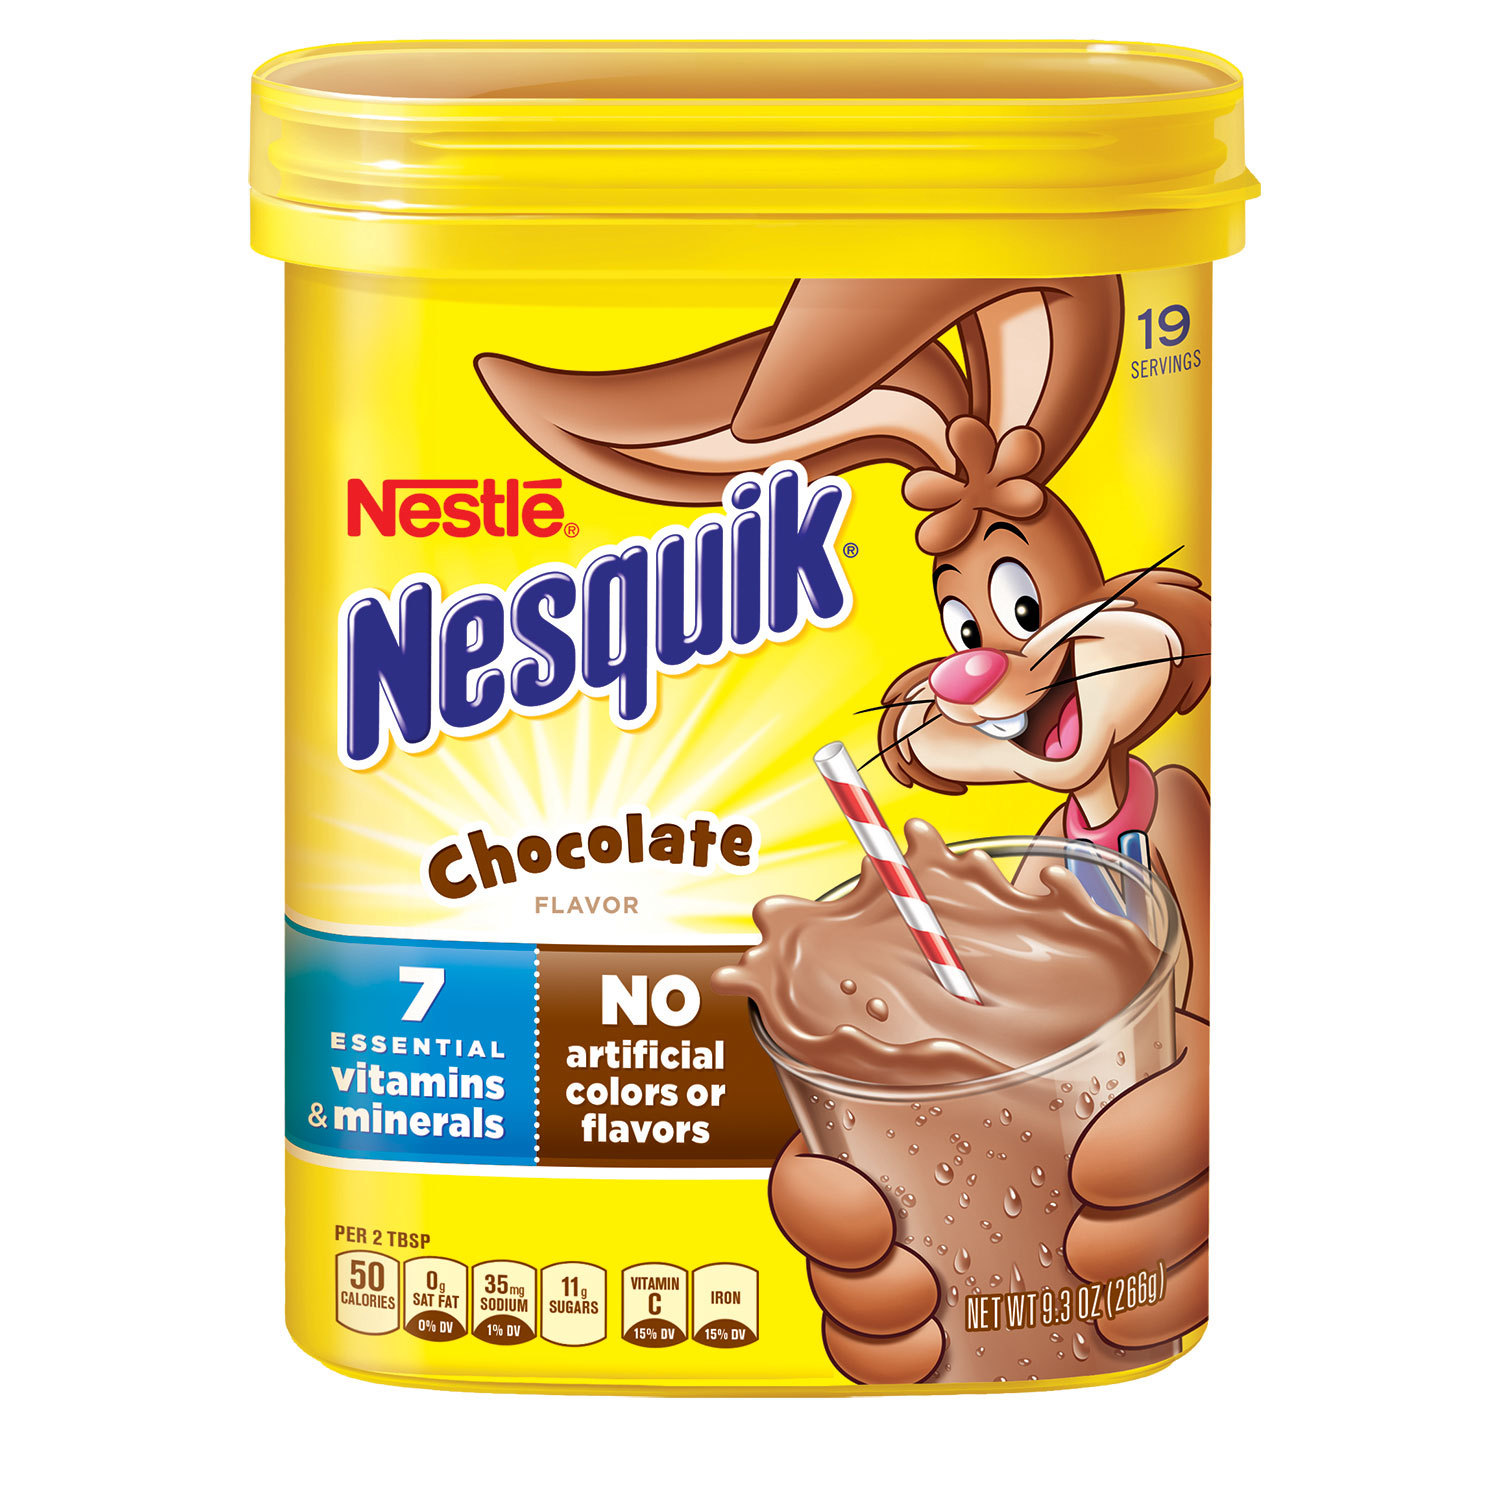 Редизайн кролика несквик. Несквик. Несквик шоколад. Несквик оригинал. Первая реклама Nesquik.